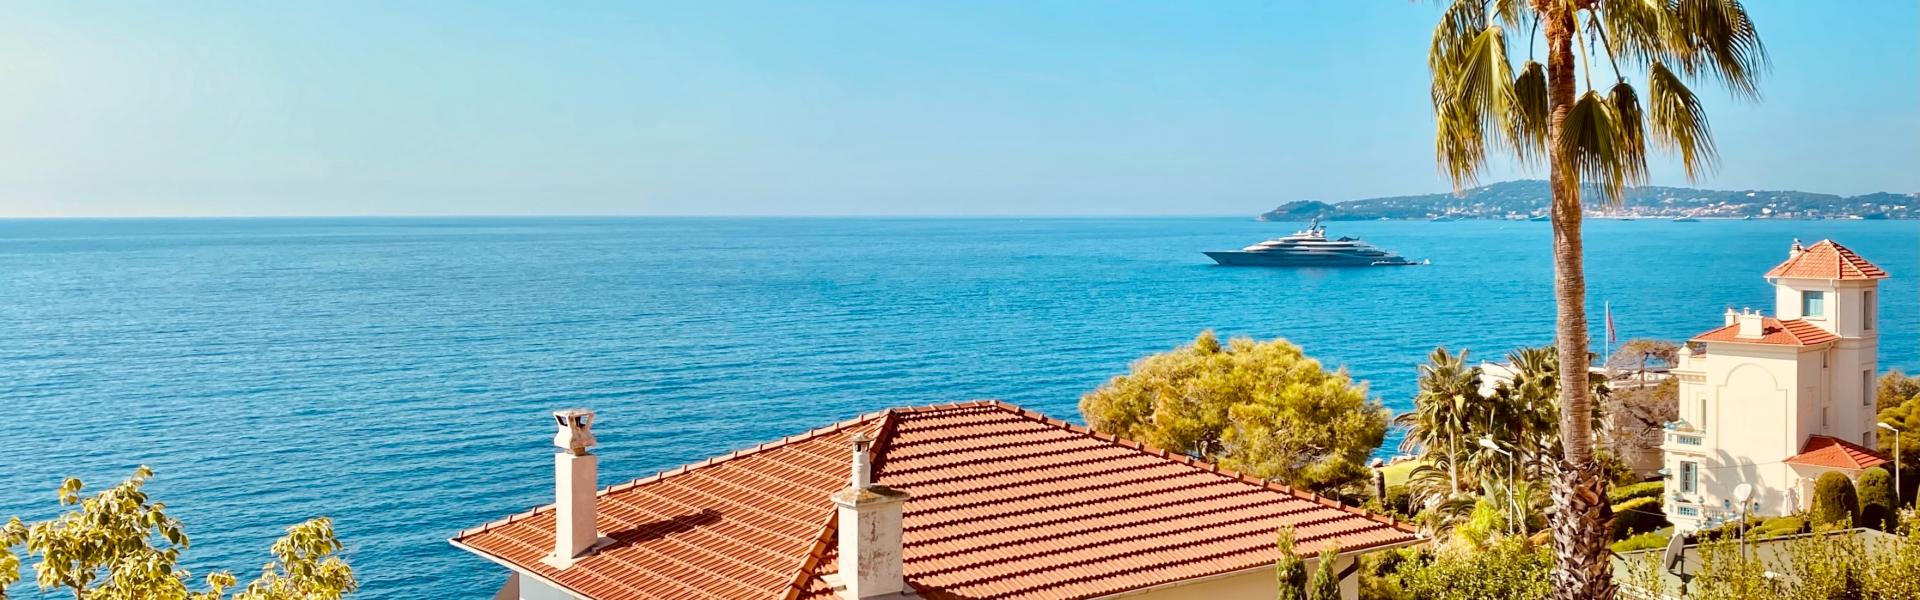 Maison en location pour les vacances, Le Cap d'Agde - Hérault - Vacances à la mer - Vacances.com